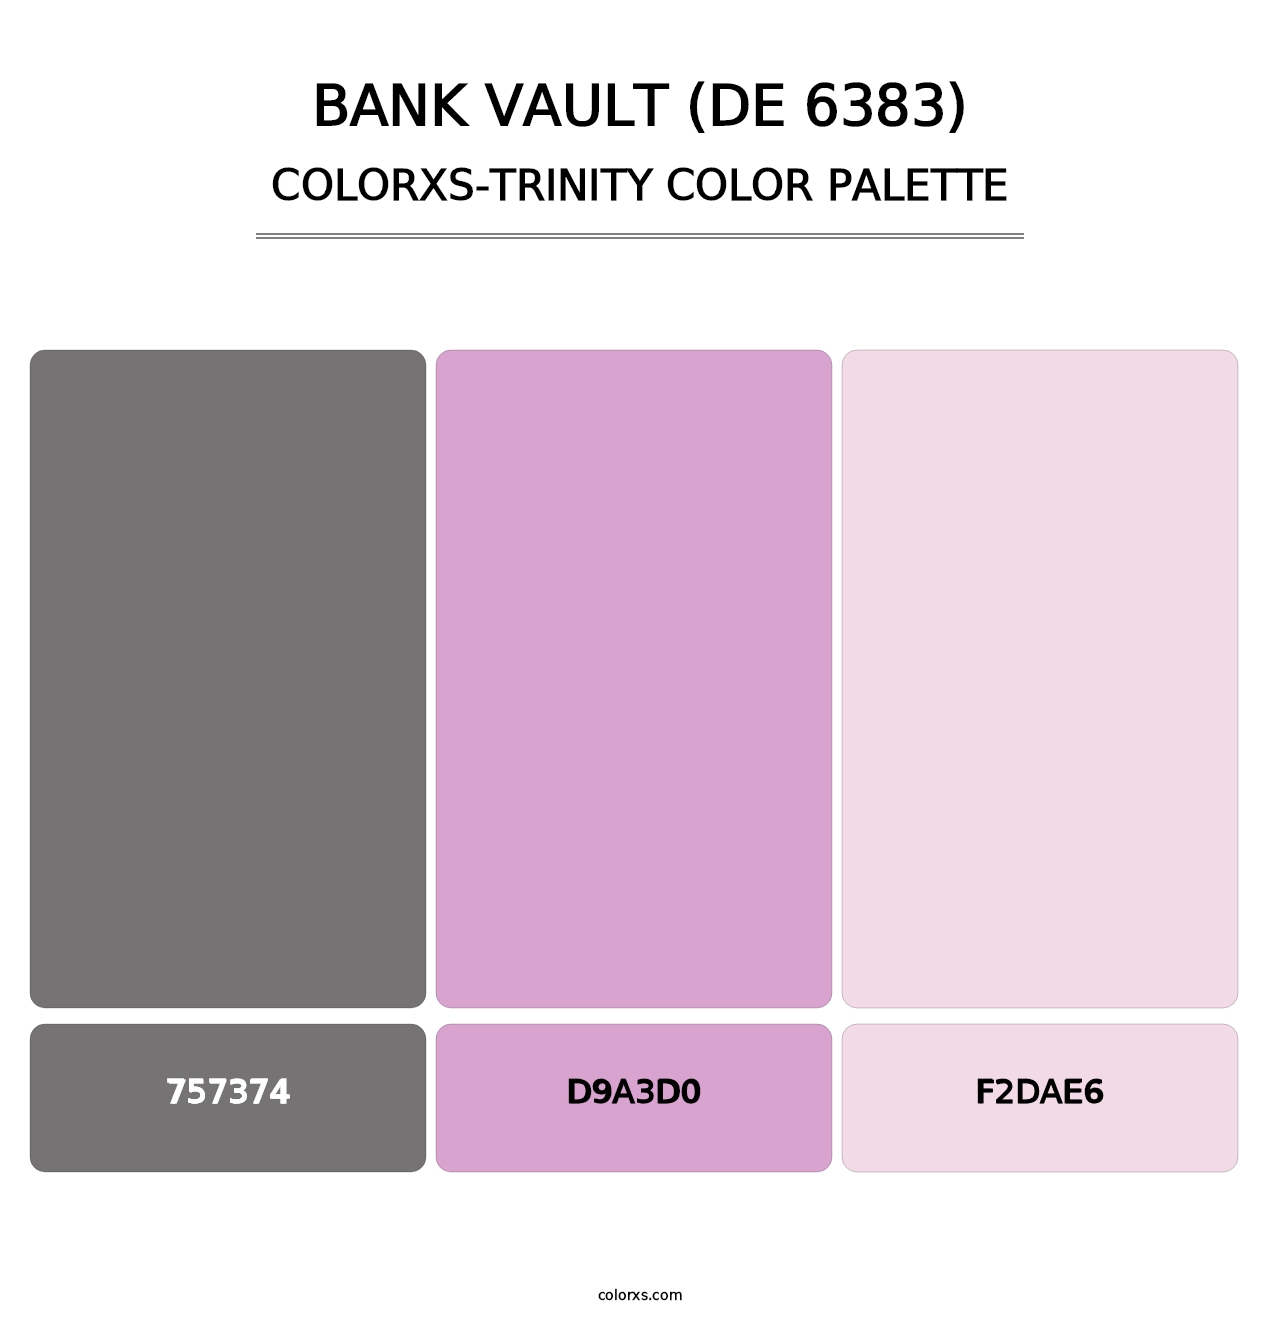 Bank Vault (DE 6383) - Colorxs Trinity Palette